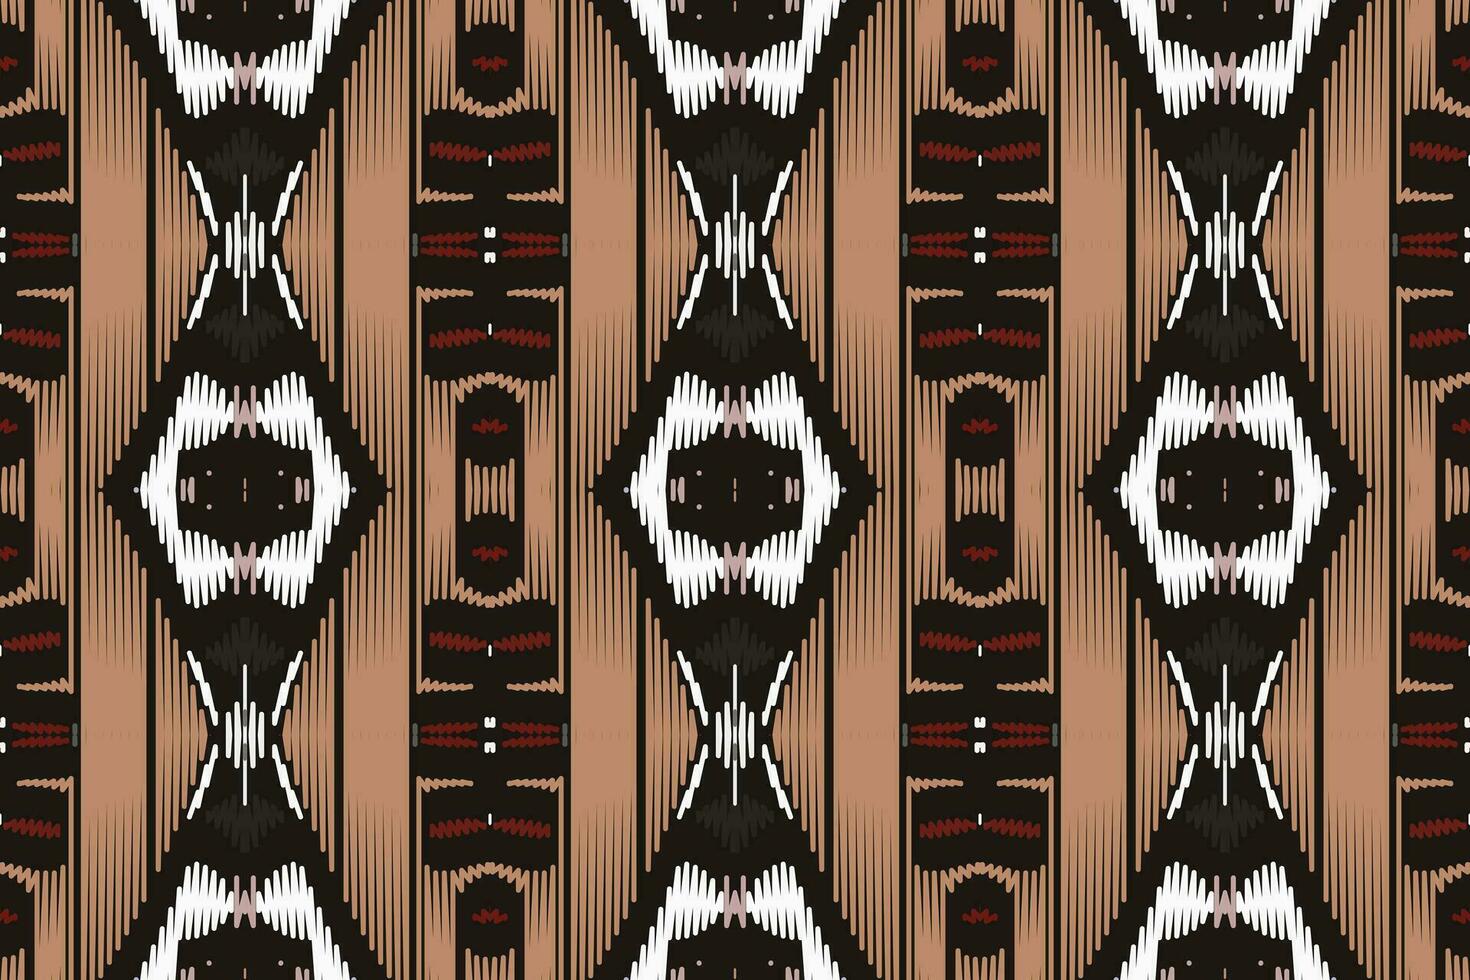 motiv ikat paisley broderi bakgrund. ikat blommig geometrisk etnisk orientalisk mönster traditionell.aztec stil abstrakt vektor illustration.design för textur, tyg, kläder, inslagning, sarong.